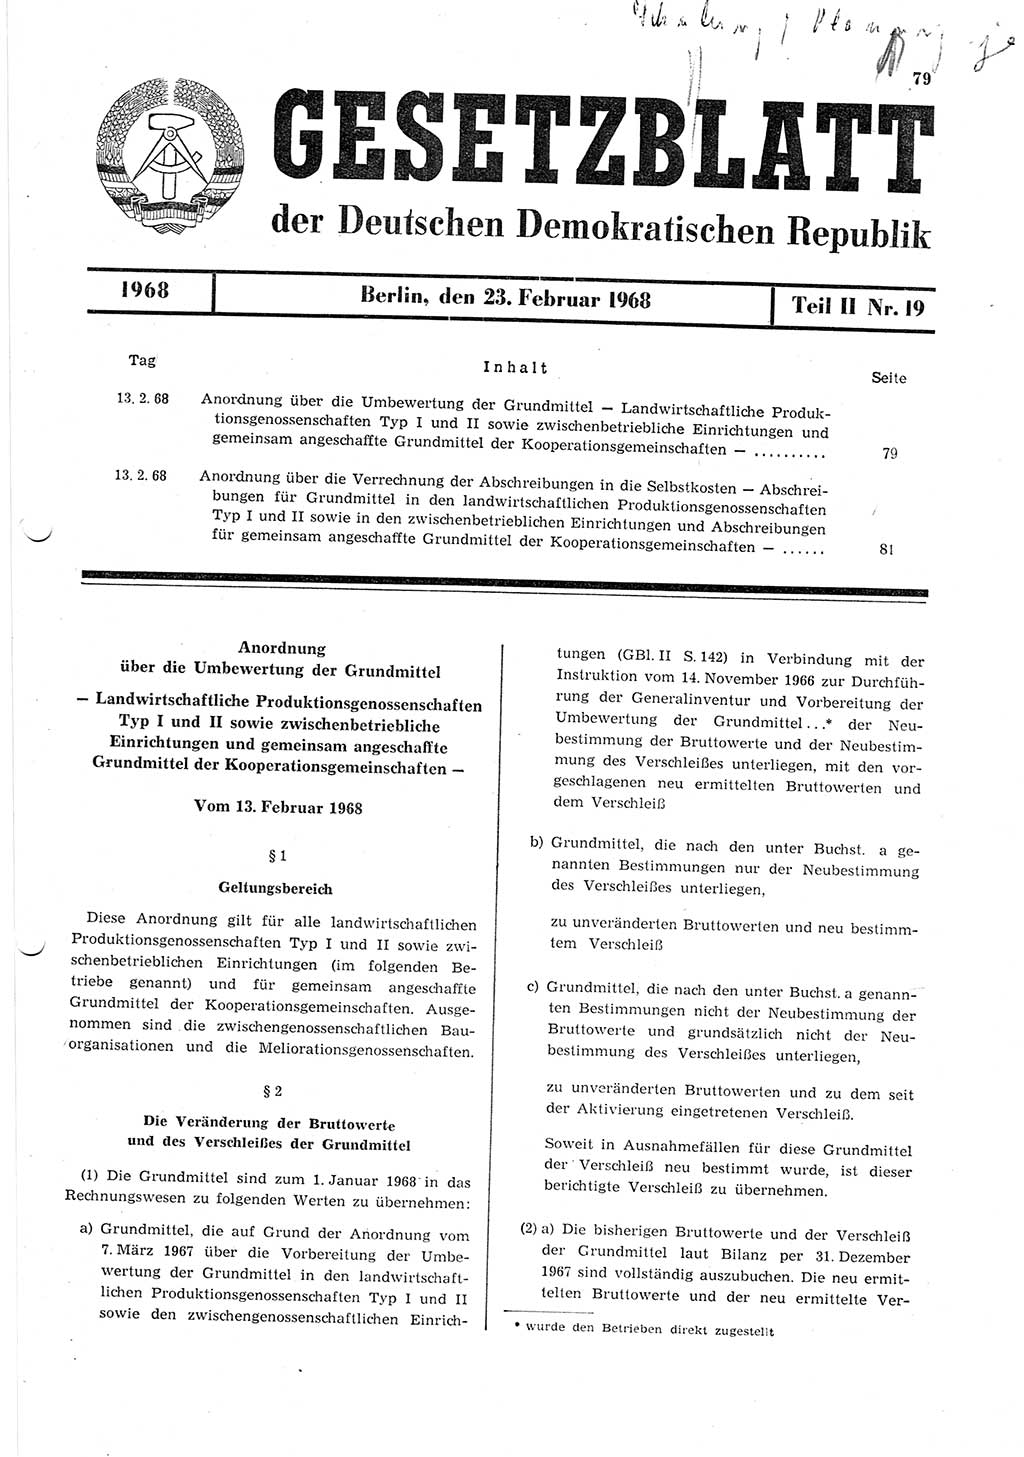 Gesetzblatt (GBl.) der Deutschen Demokratischen Republik (DDR) Teil ⅠⅠ 1968, Seite 79 (GBl. DDR ⅠⅠ 1968, S. 79)